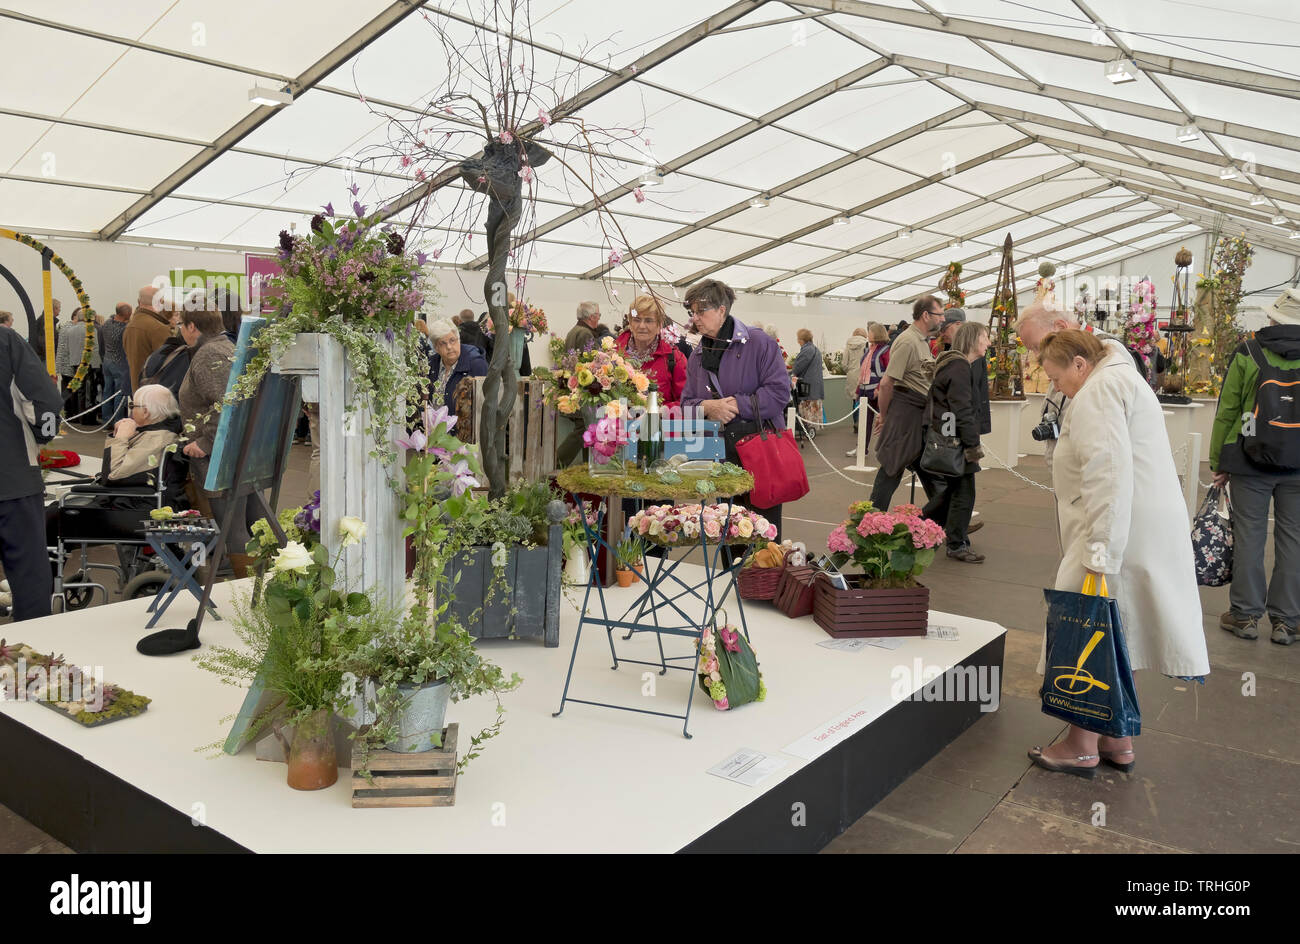 Personnes dames regardant les arrangements de fleurs expositions au Spring Flower Show Harrogate North Yorkshire Angleterre Royaume-Uni Banque D'Images